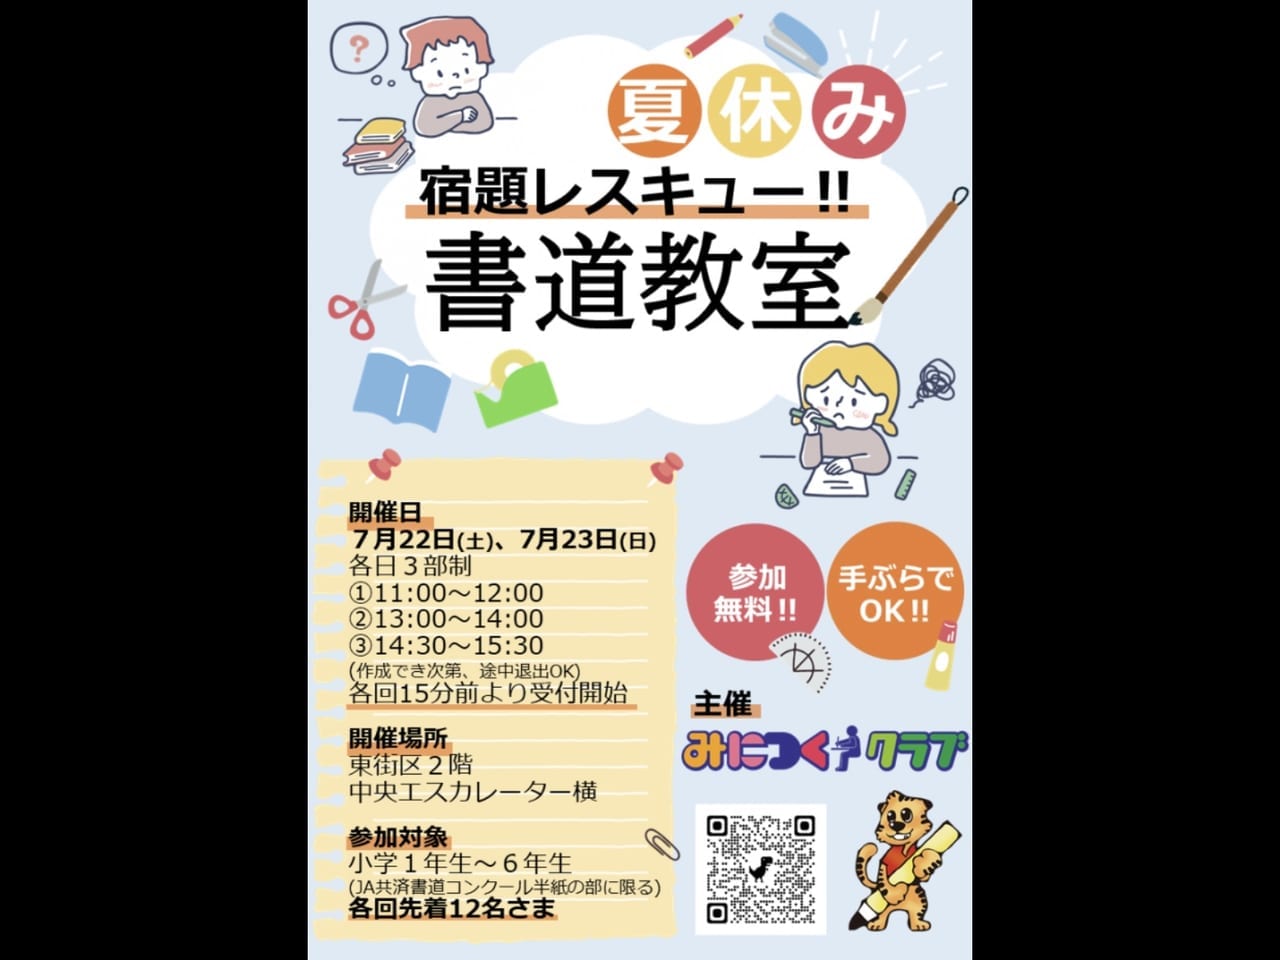 【吉川市】小学生必見!?「宿題レスキュー‼書道教室」が開催されるそうです